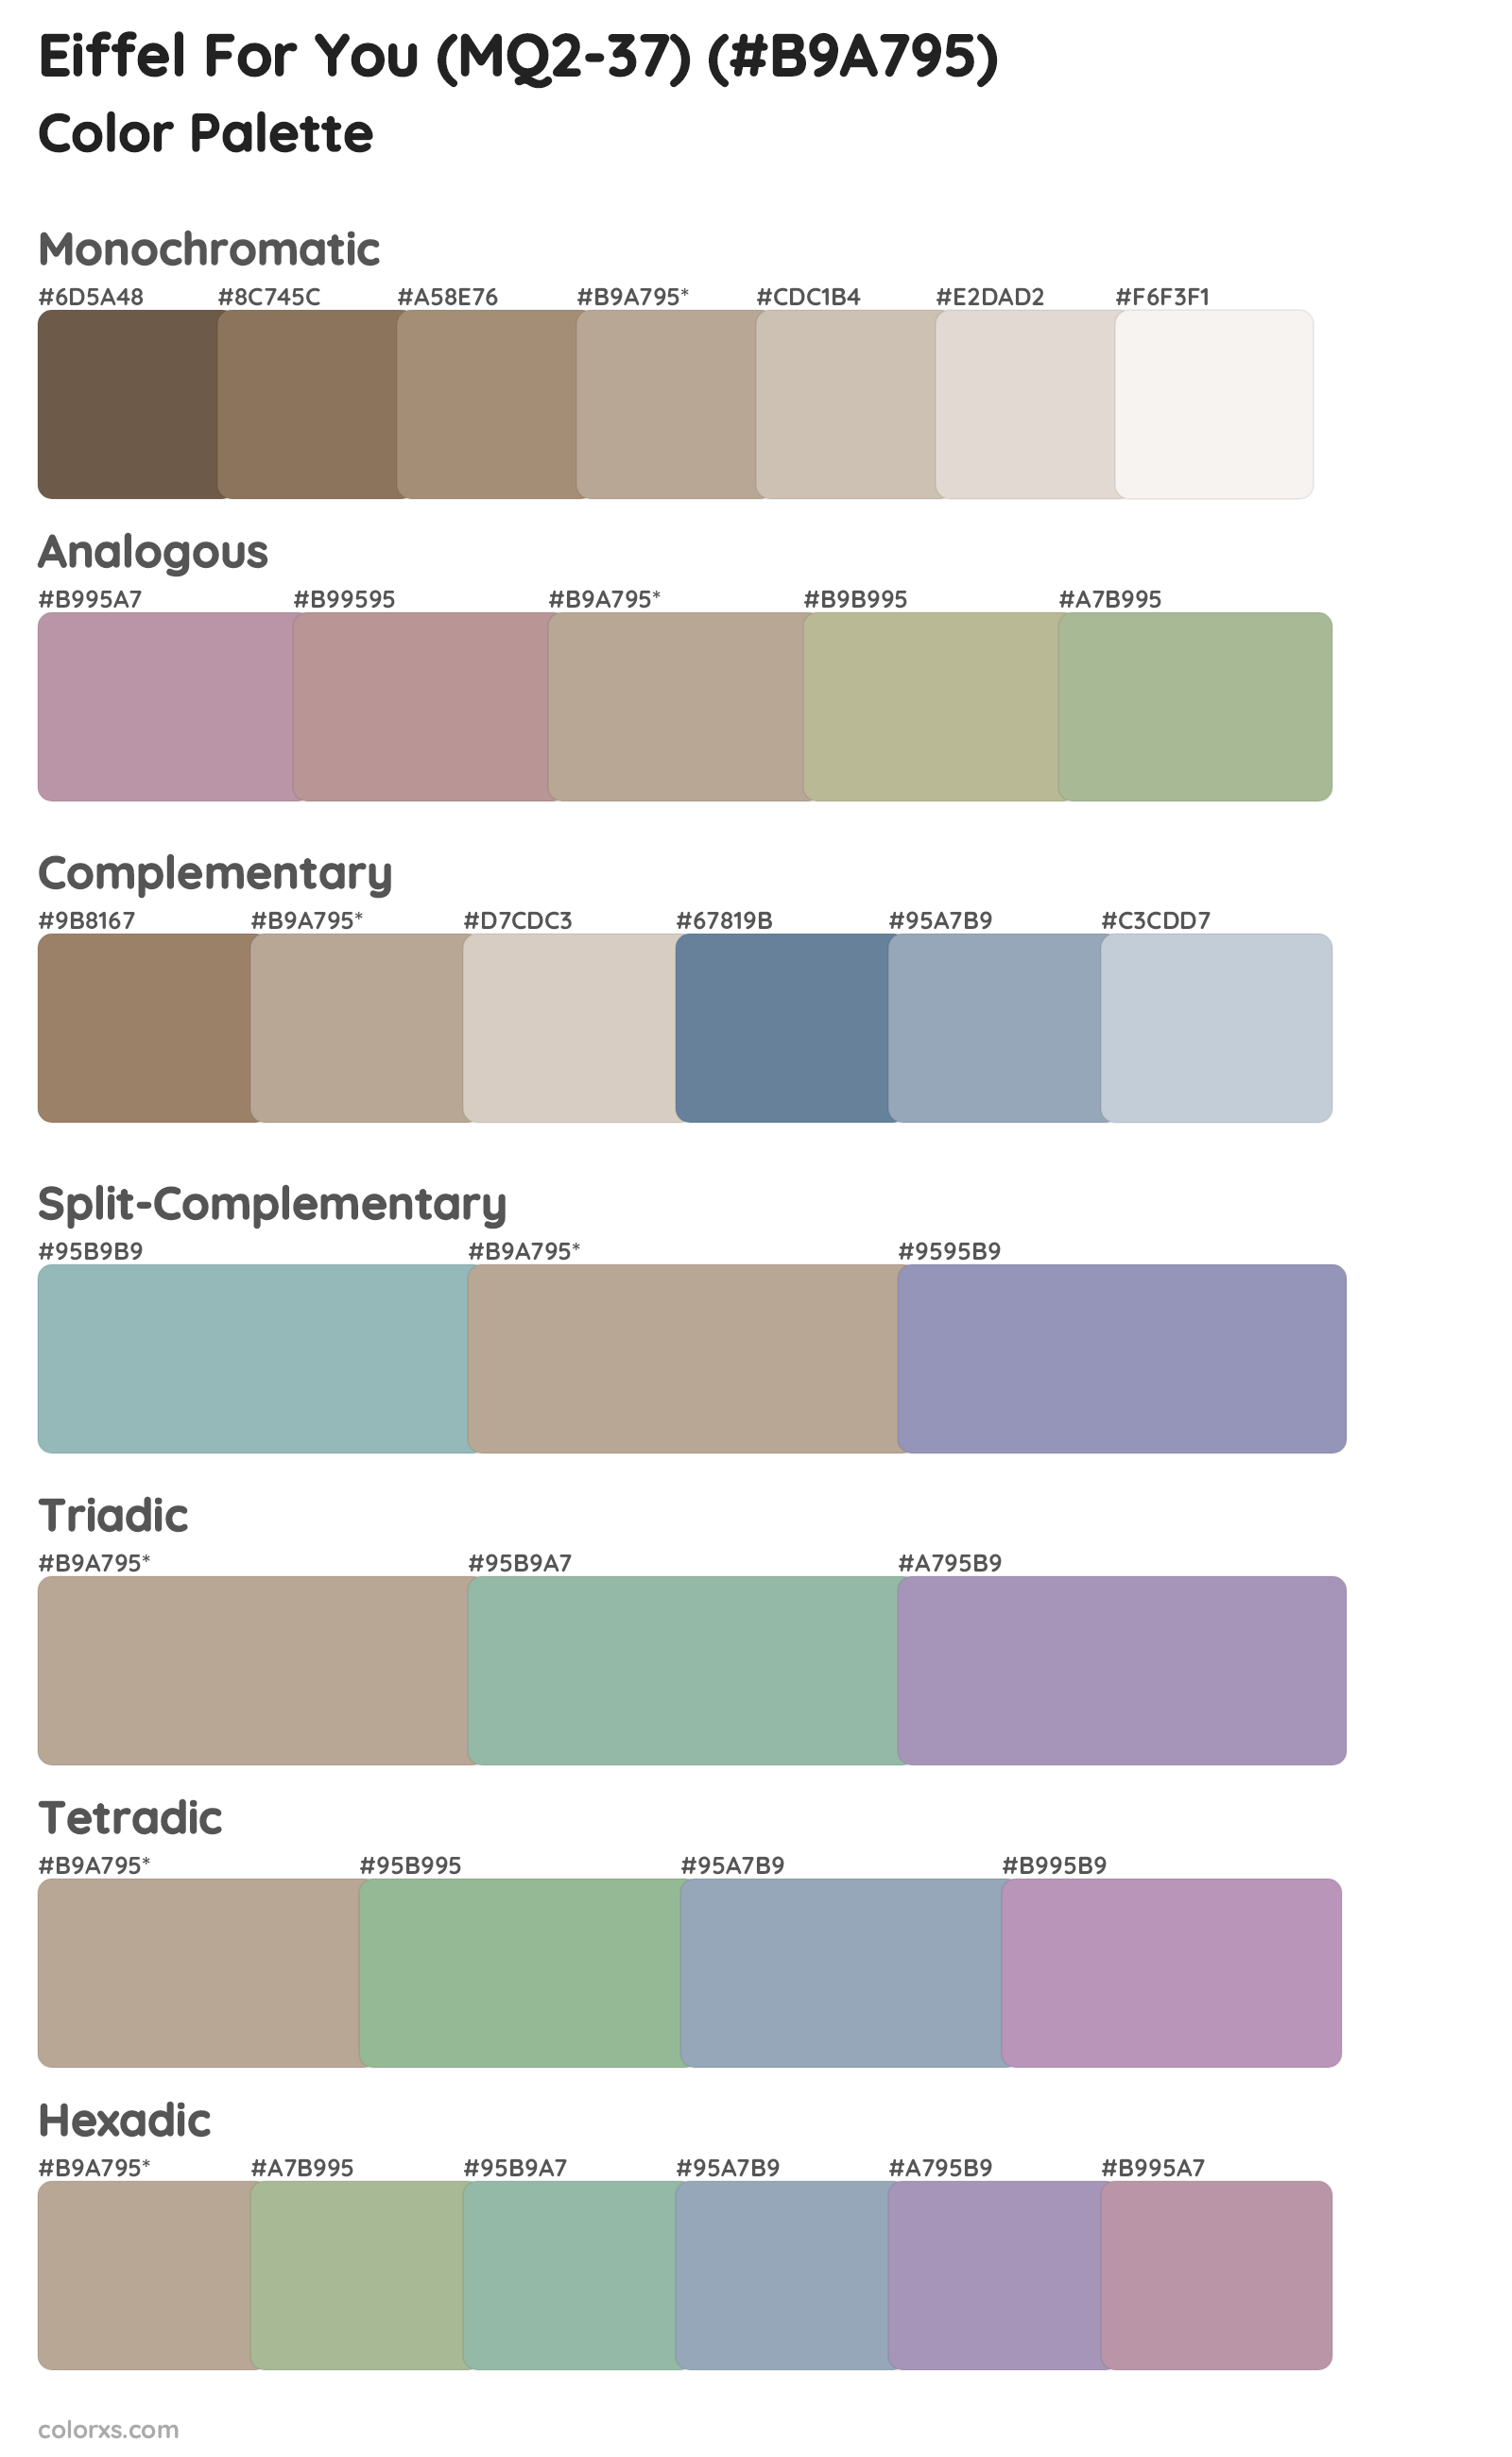 Eiffel For You (MQ2-37) Color Scheme Palettes